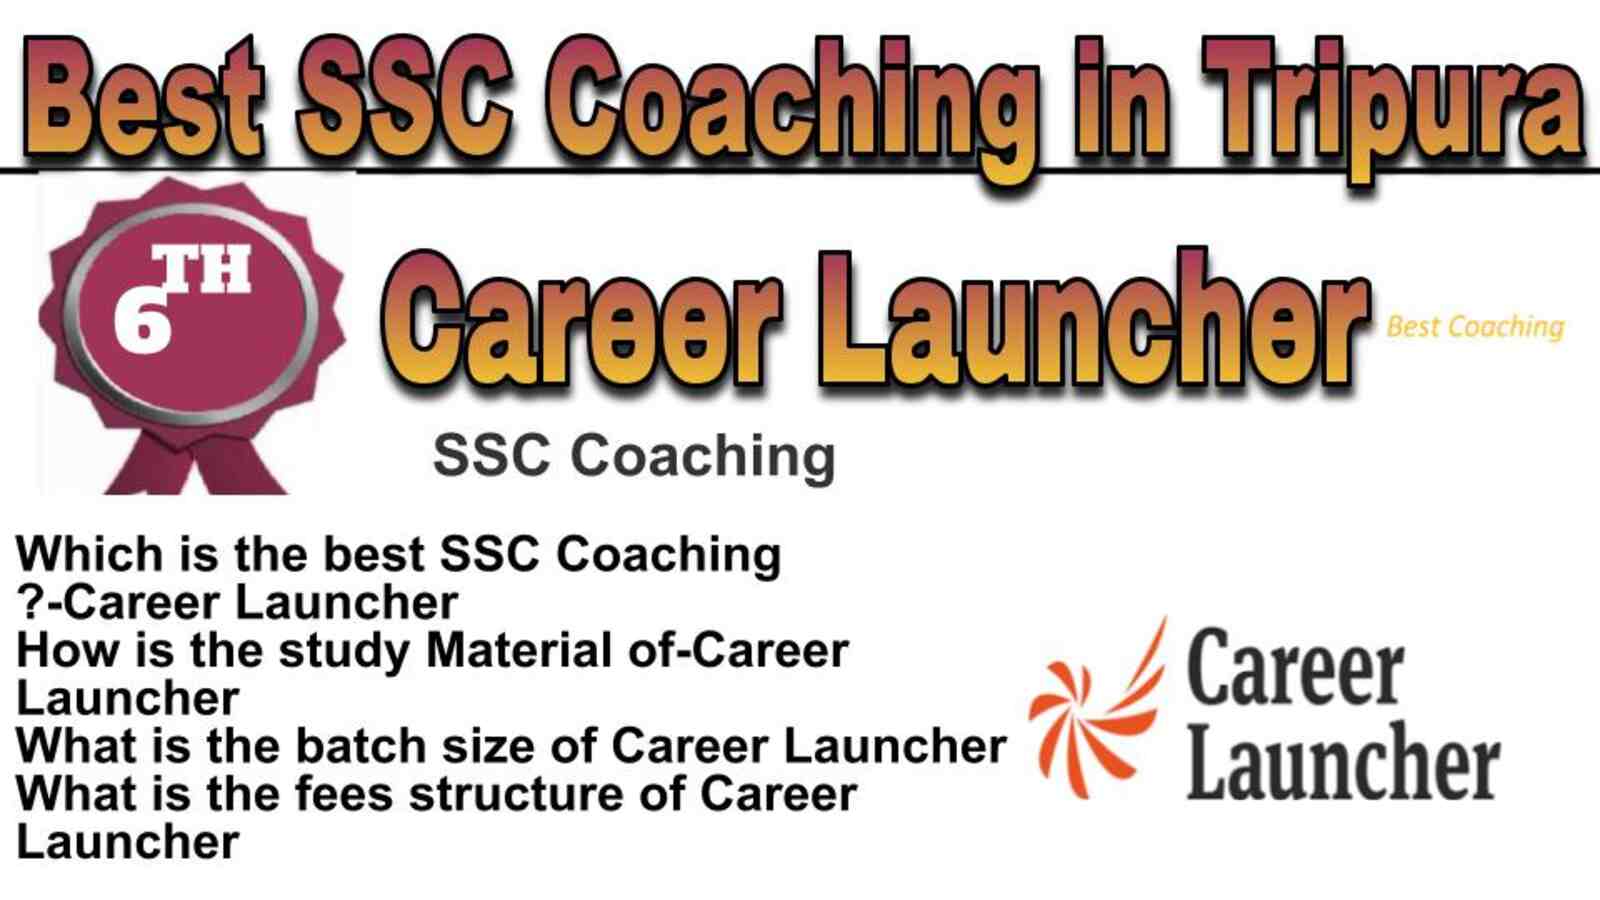 Rank 6 best SSC Coaching in Tripura